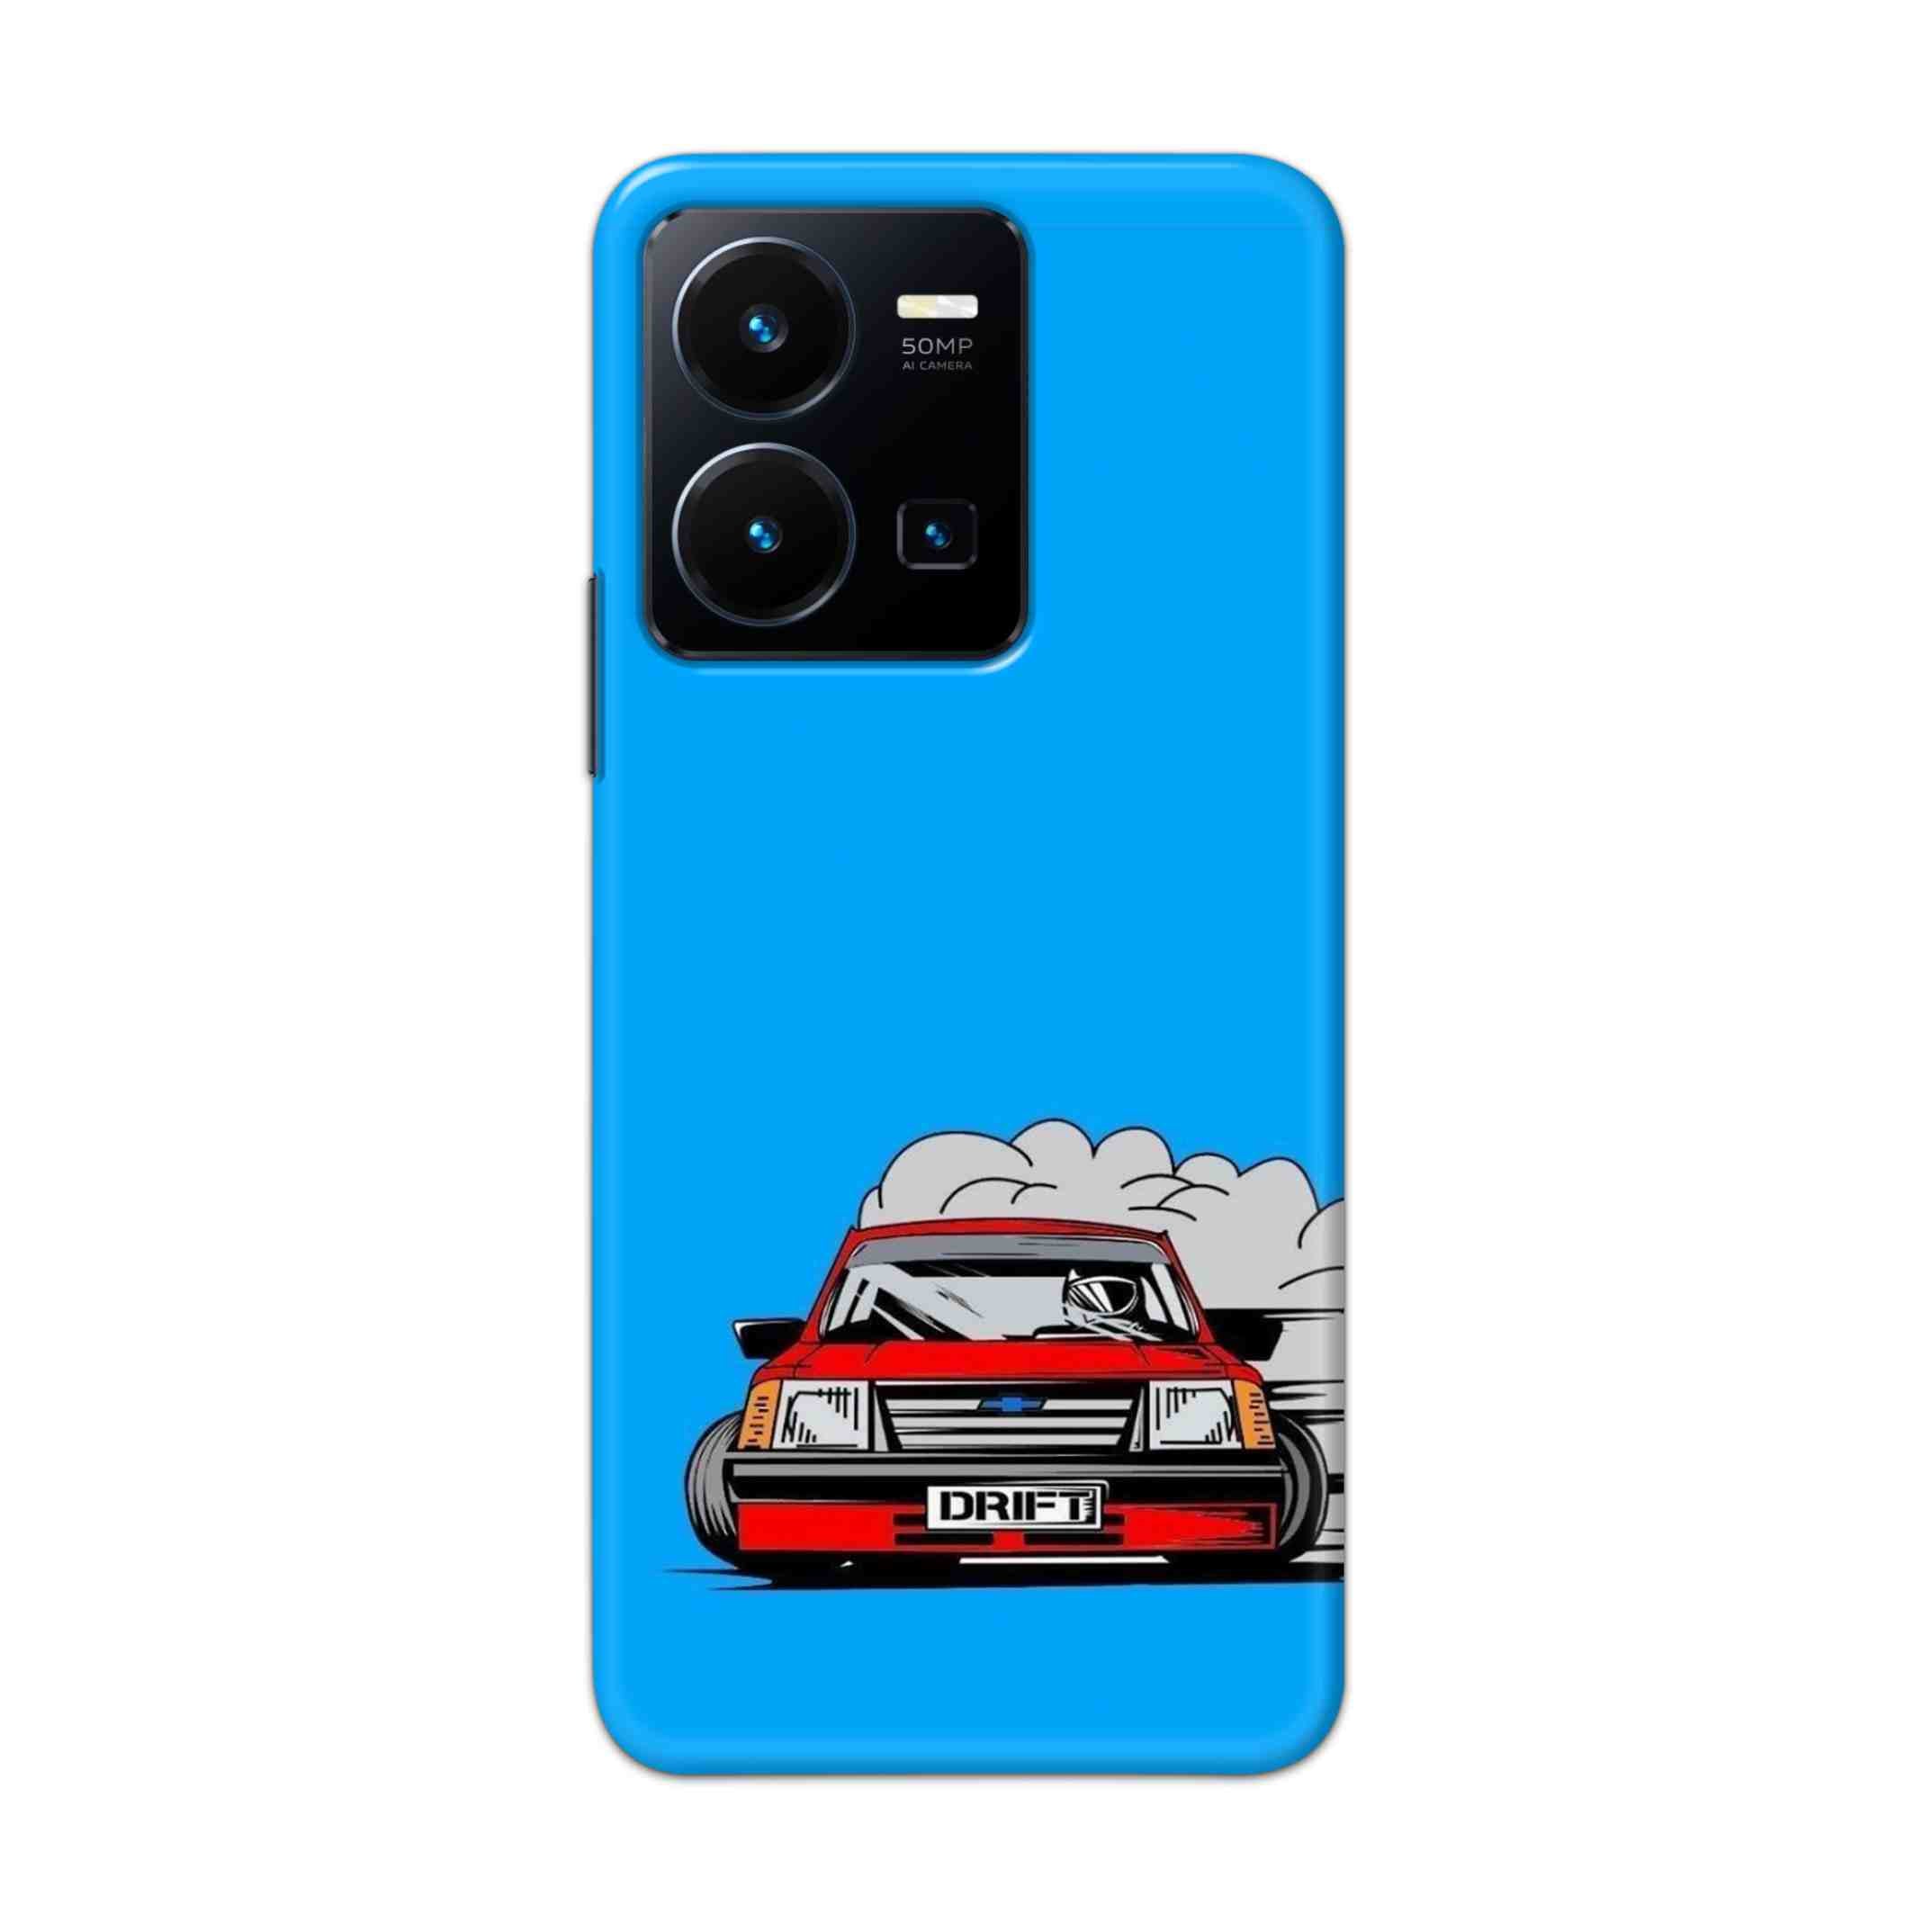 Buy Drift Hard Back Mobile Phone Case Cover For Vivo Y35 2022 Online